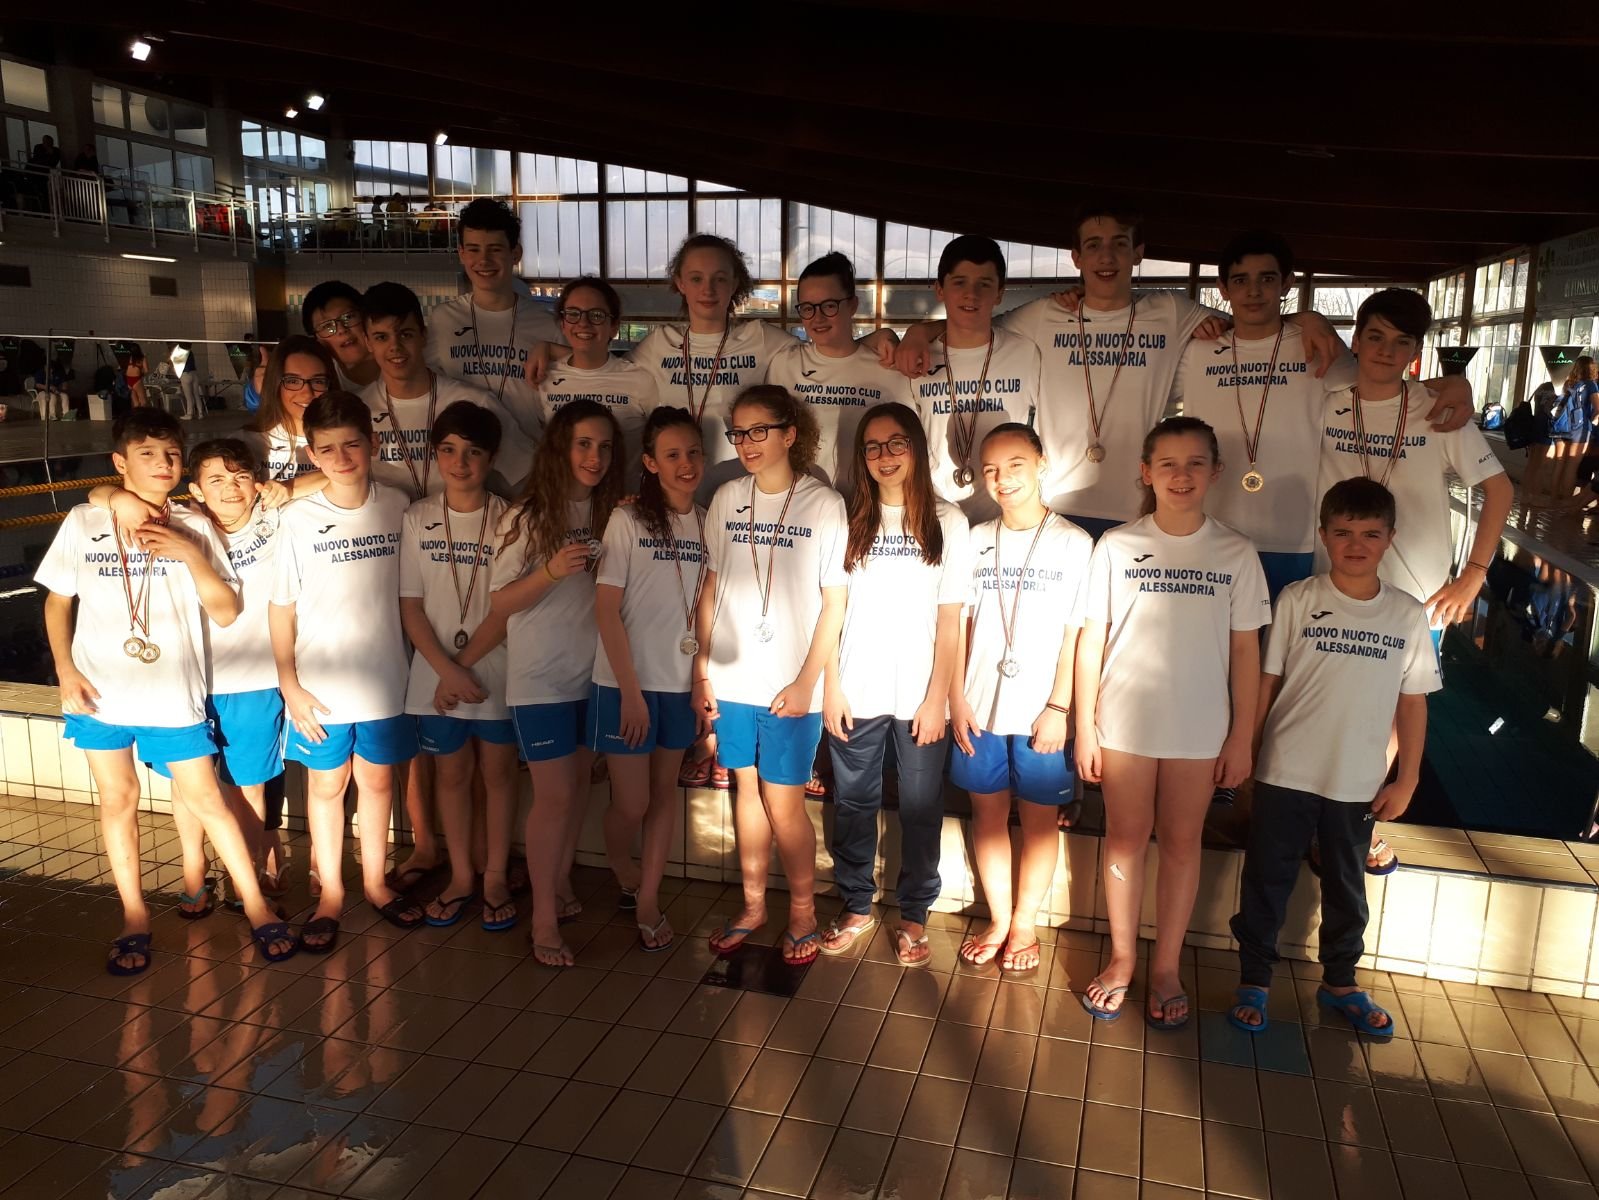 Nuovo Nuoto Club Alessandria sugli scudi a Fossano